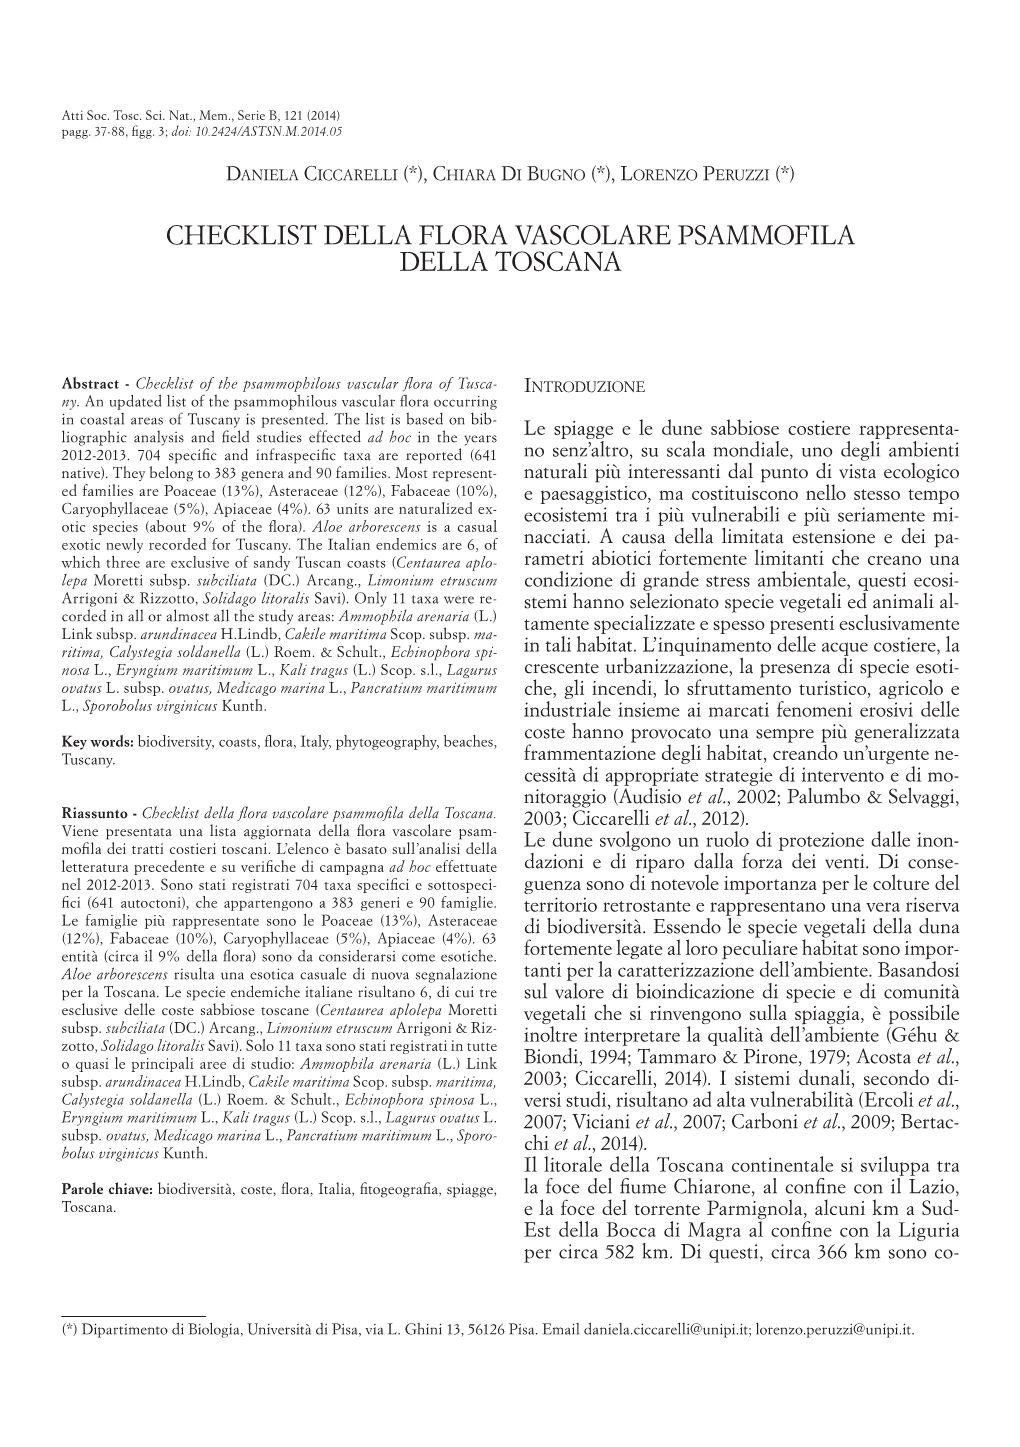 Checklist Della Flora Vascolare Psammofila Della Toscana